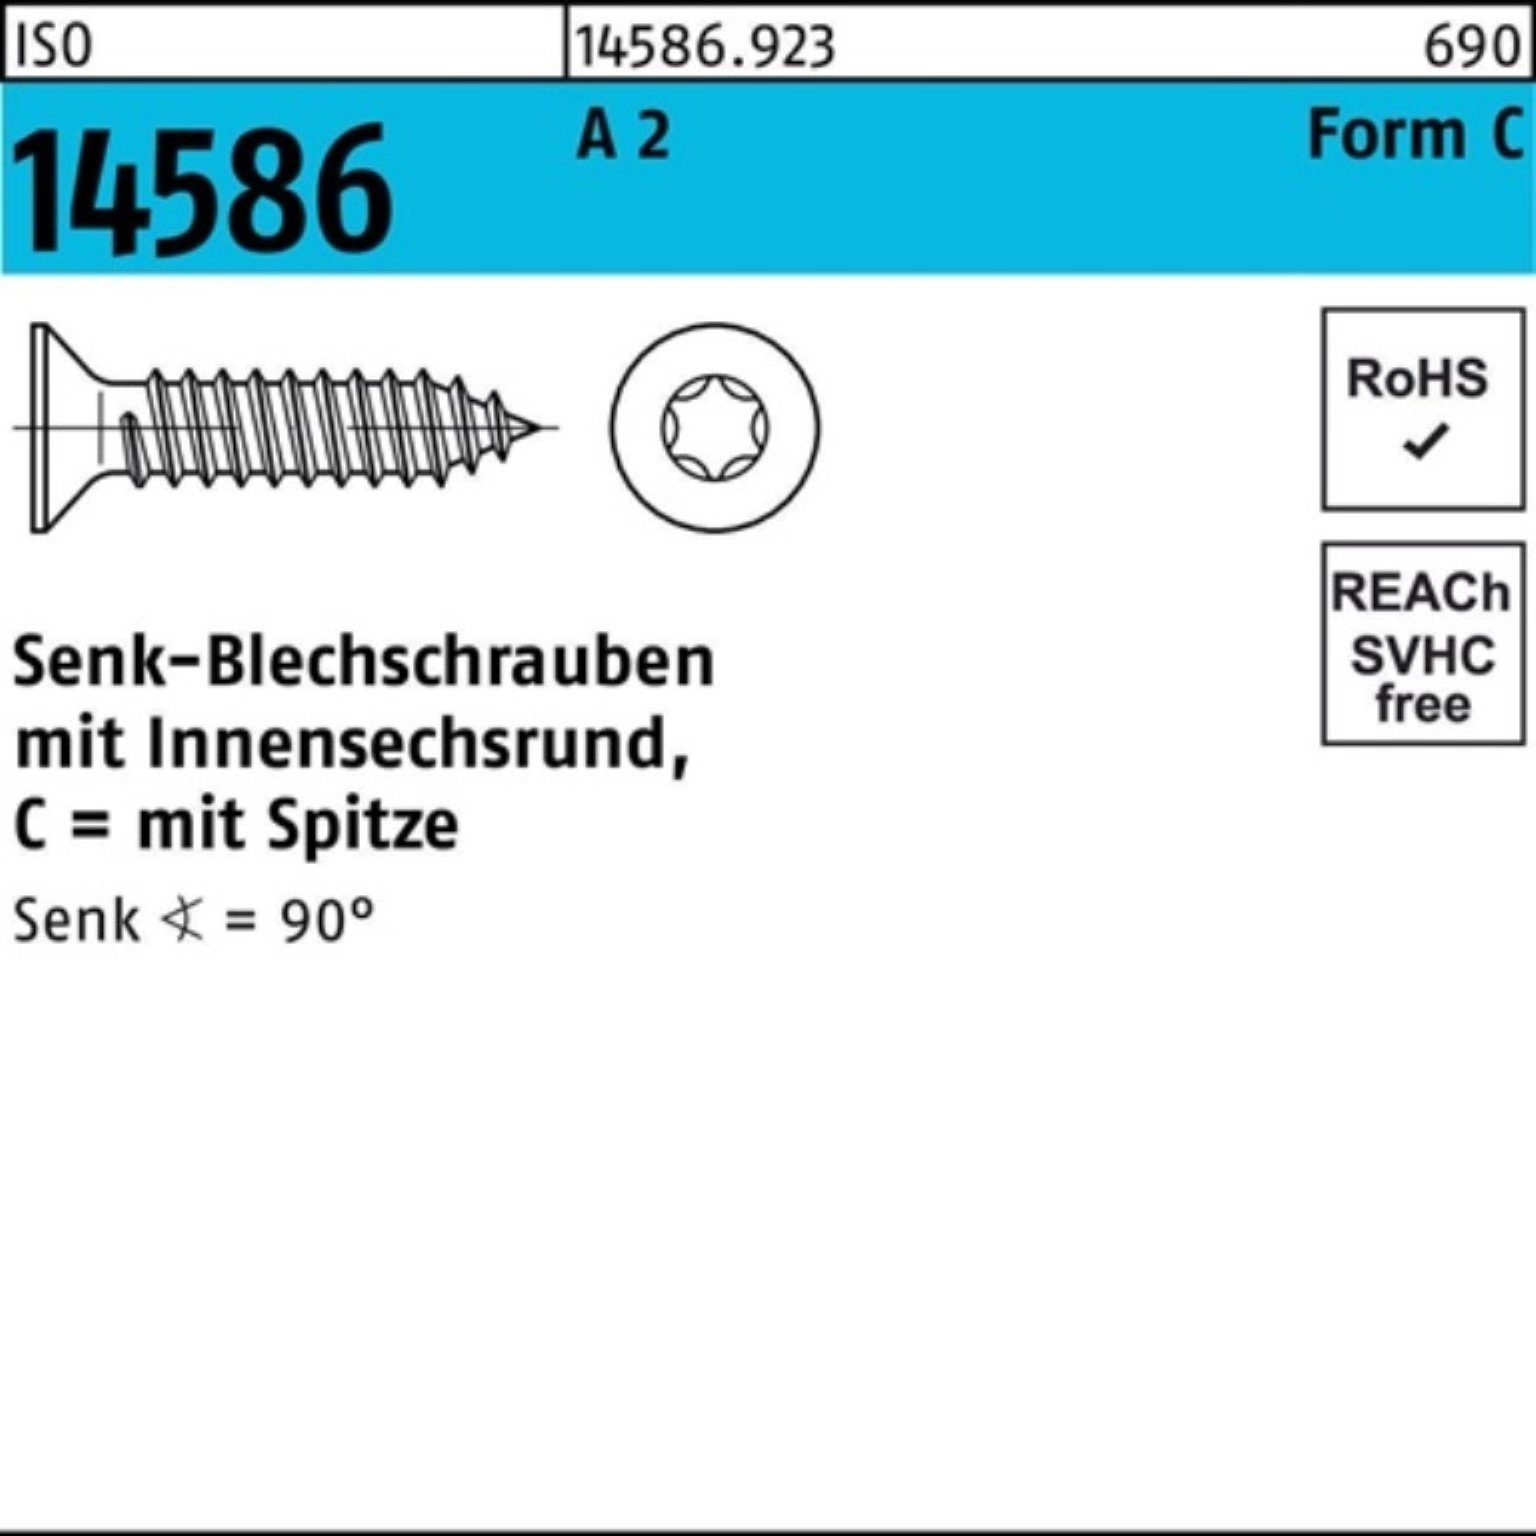 Reyher Schraube 500er Pack Senkblechschraube ISO 14586 ISR/Spitze 4,8x 25 -C T25 A 2 5